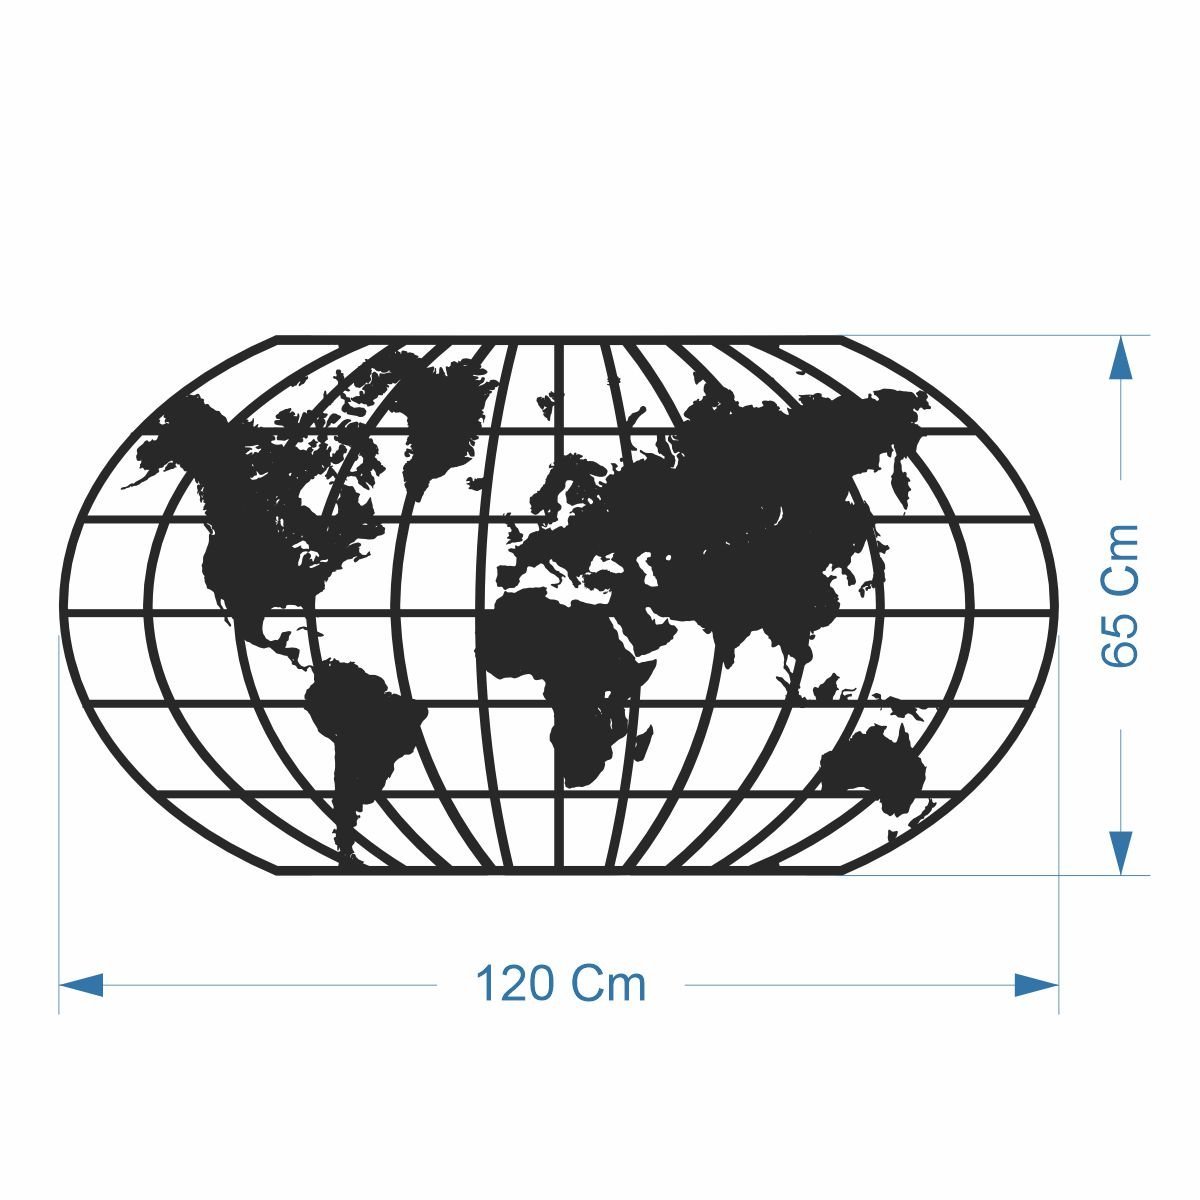 Quadro Decoração Vazado Mapa Mundi World Uno Preto 120x65 Cm - 3